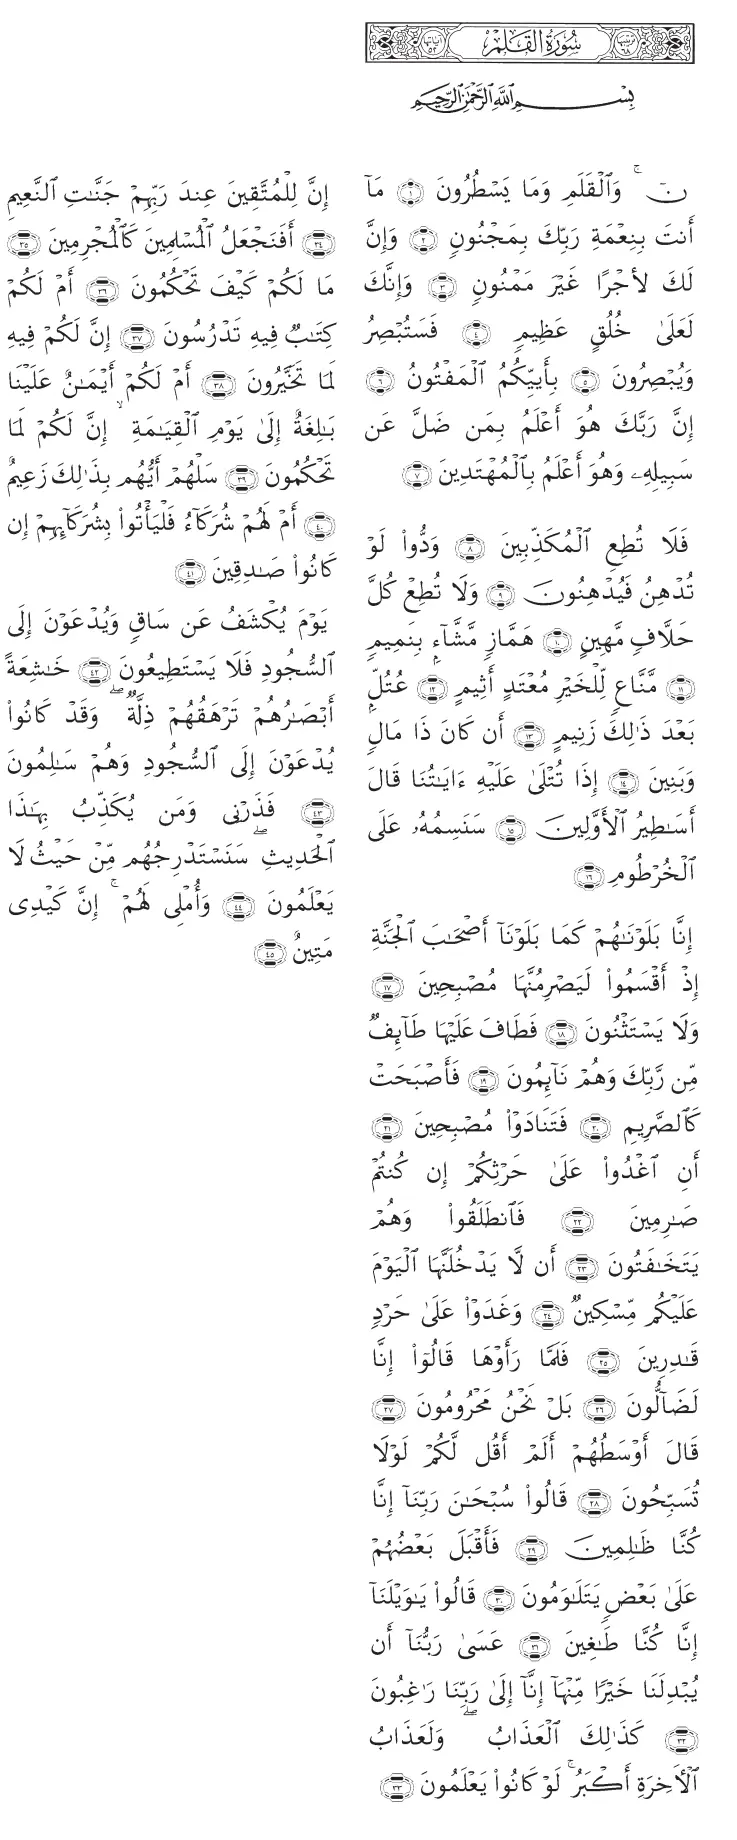 アル・カラム筆アラビア語